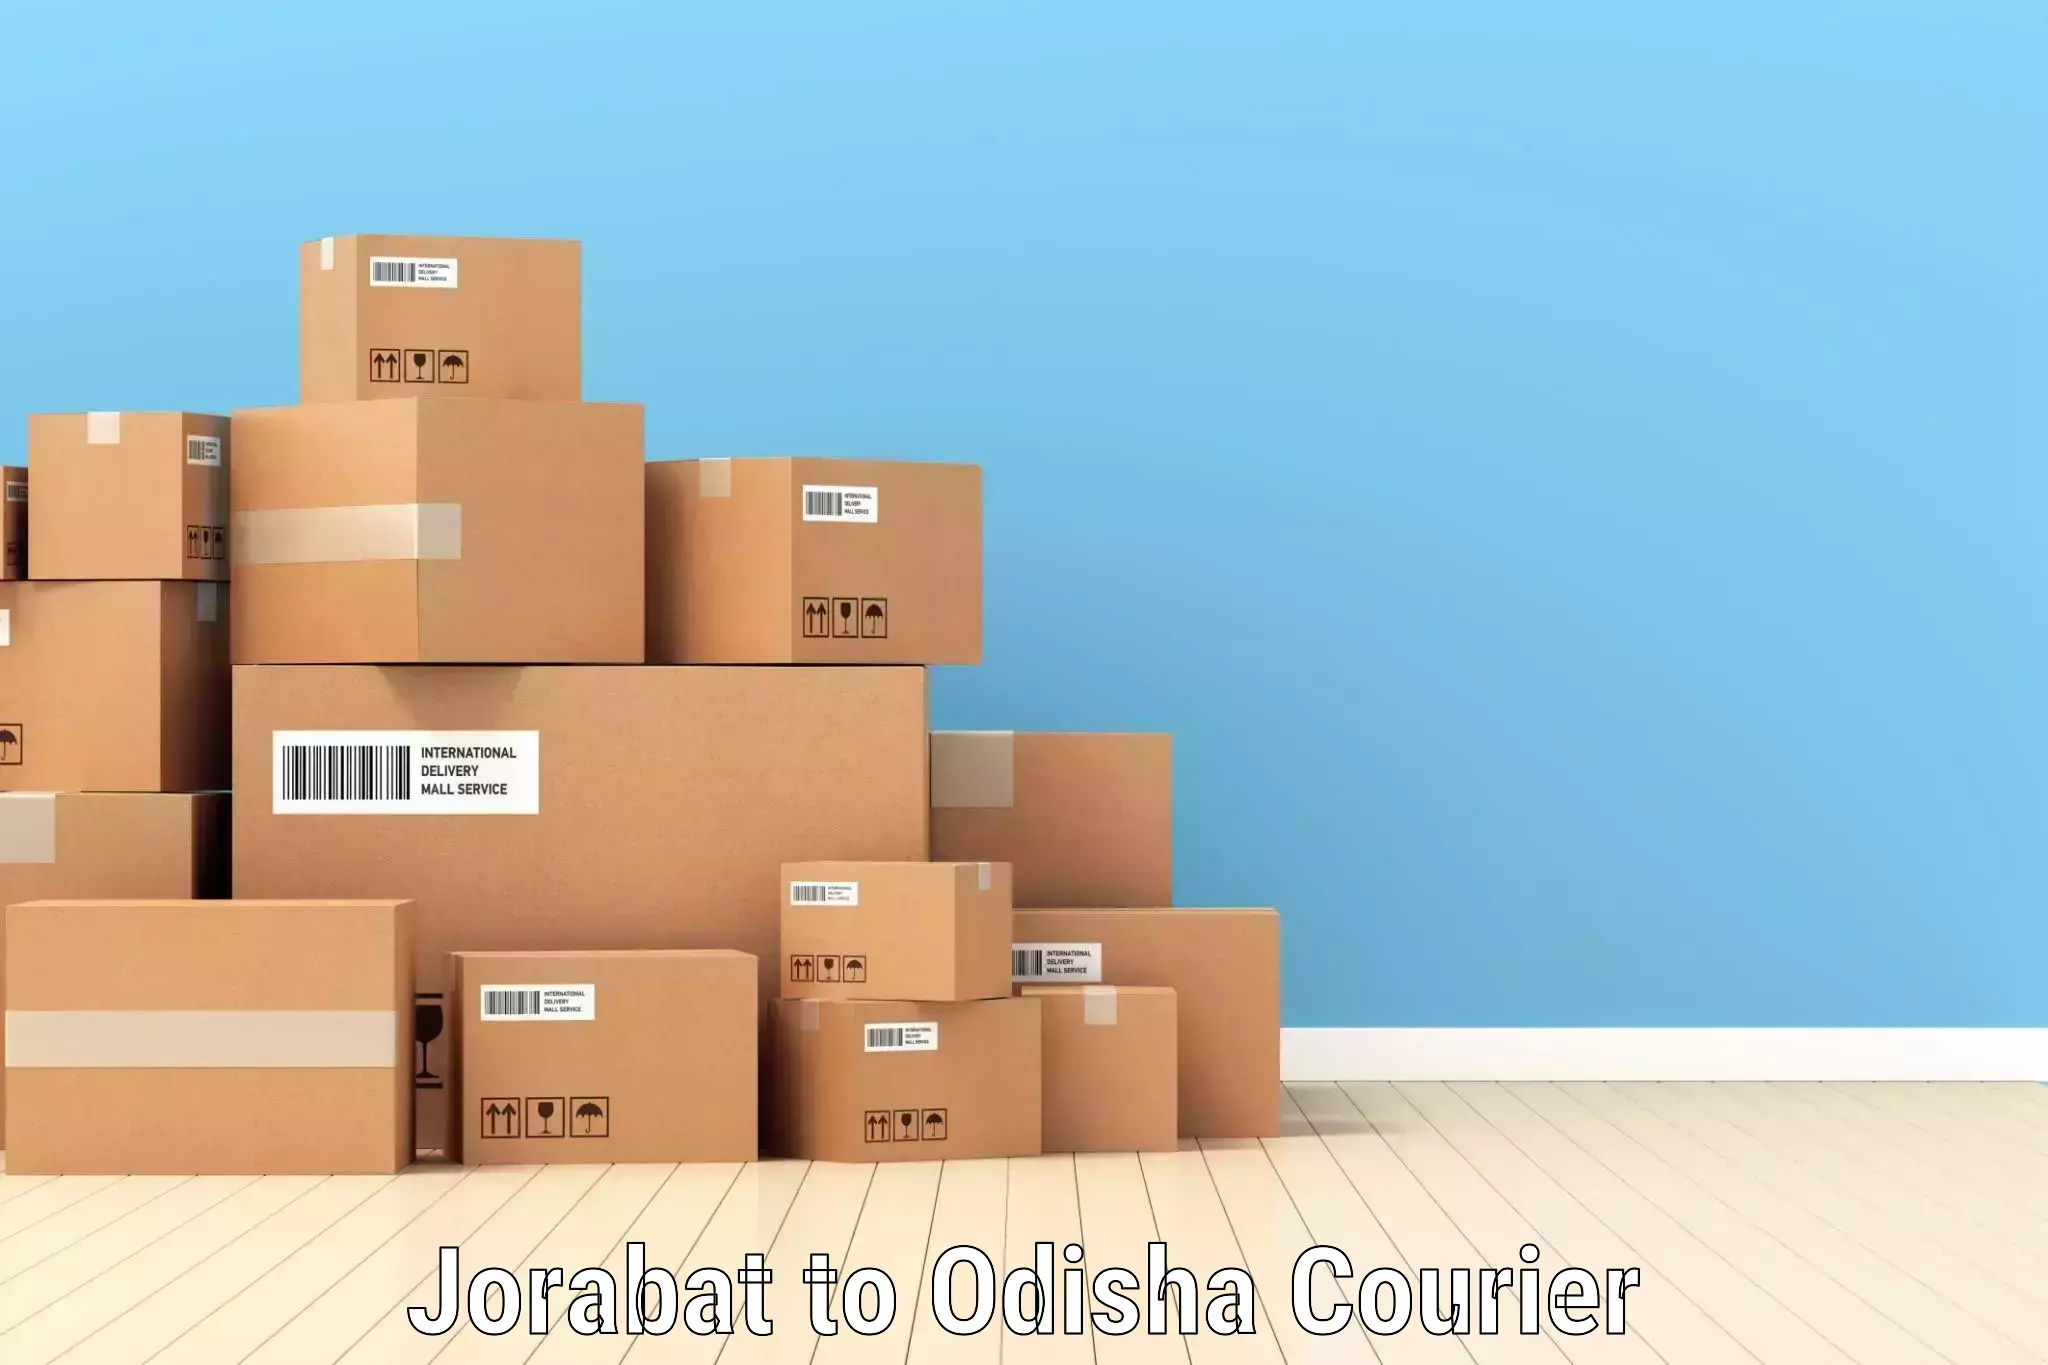 Efficient courier operations Jorabat to Bahalda